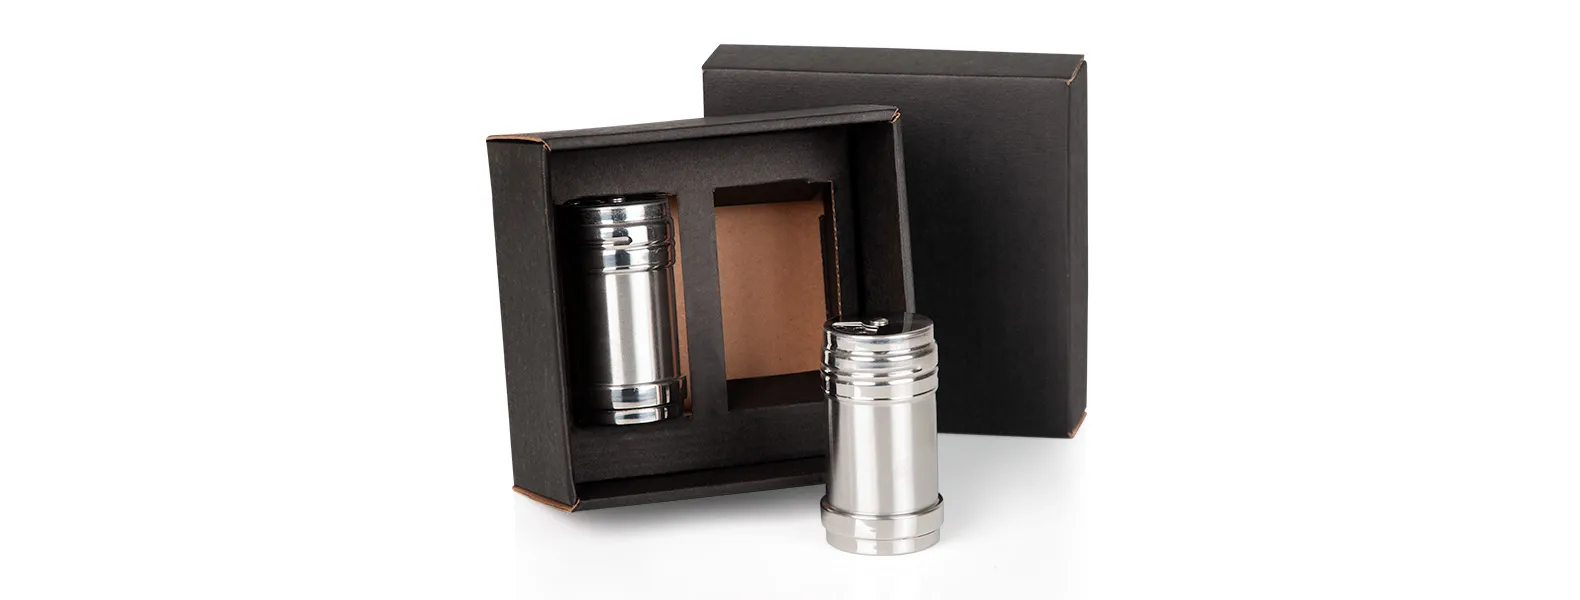 Kit contendo dois potes de aço inox para tempero com tampa giratória acomodados em uma embalagem para presente.